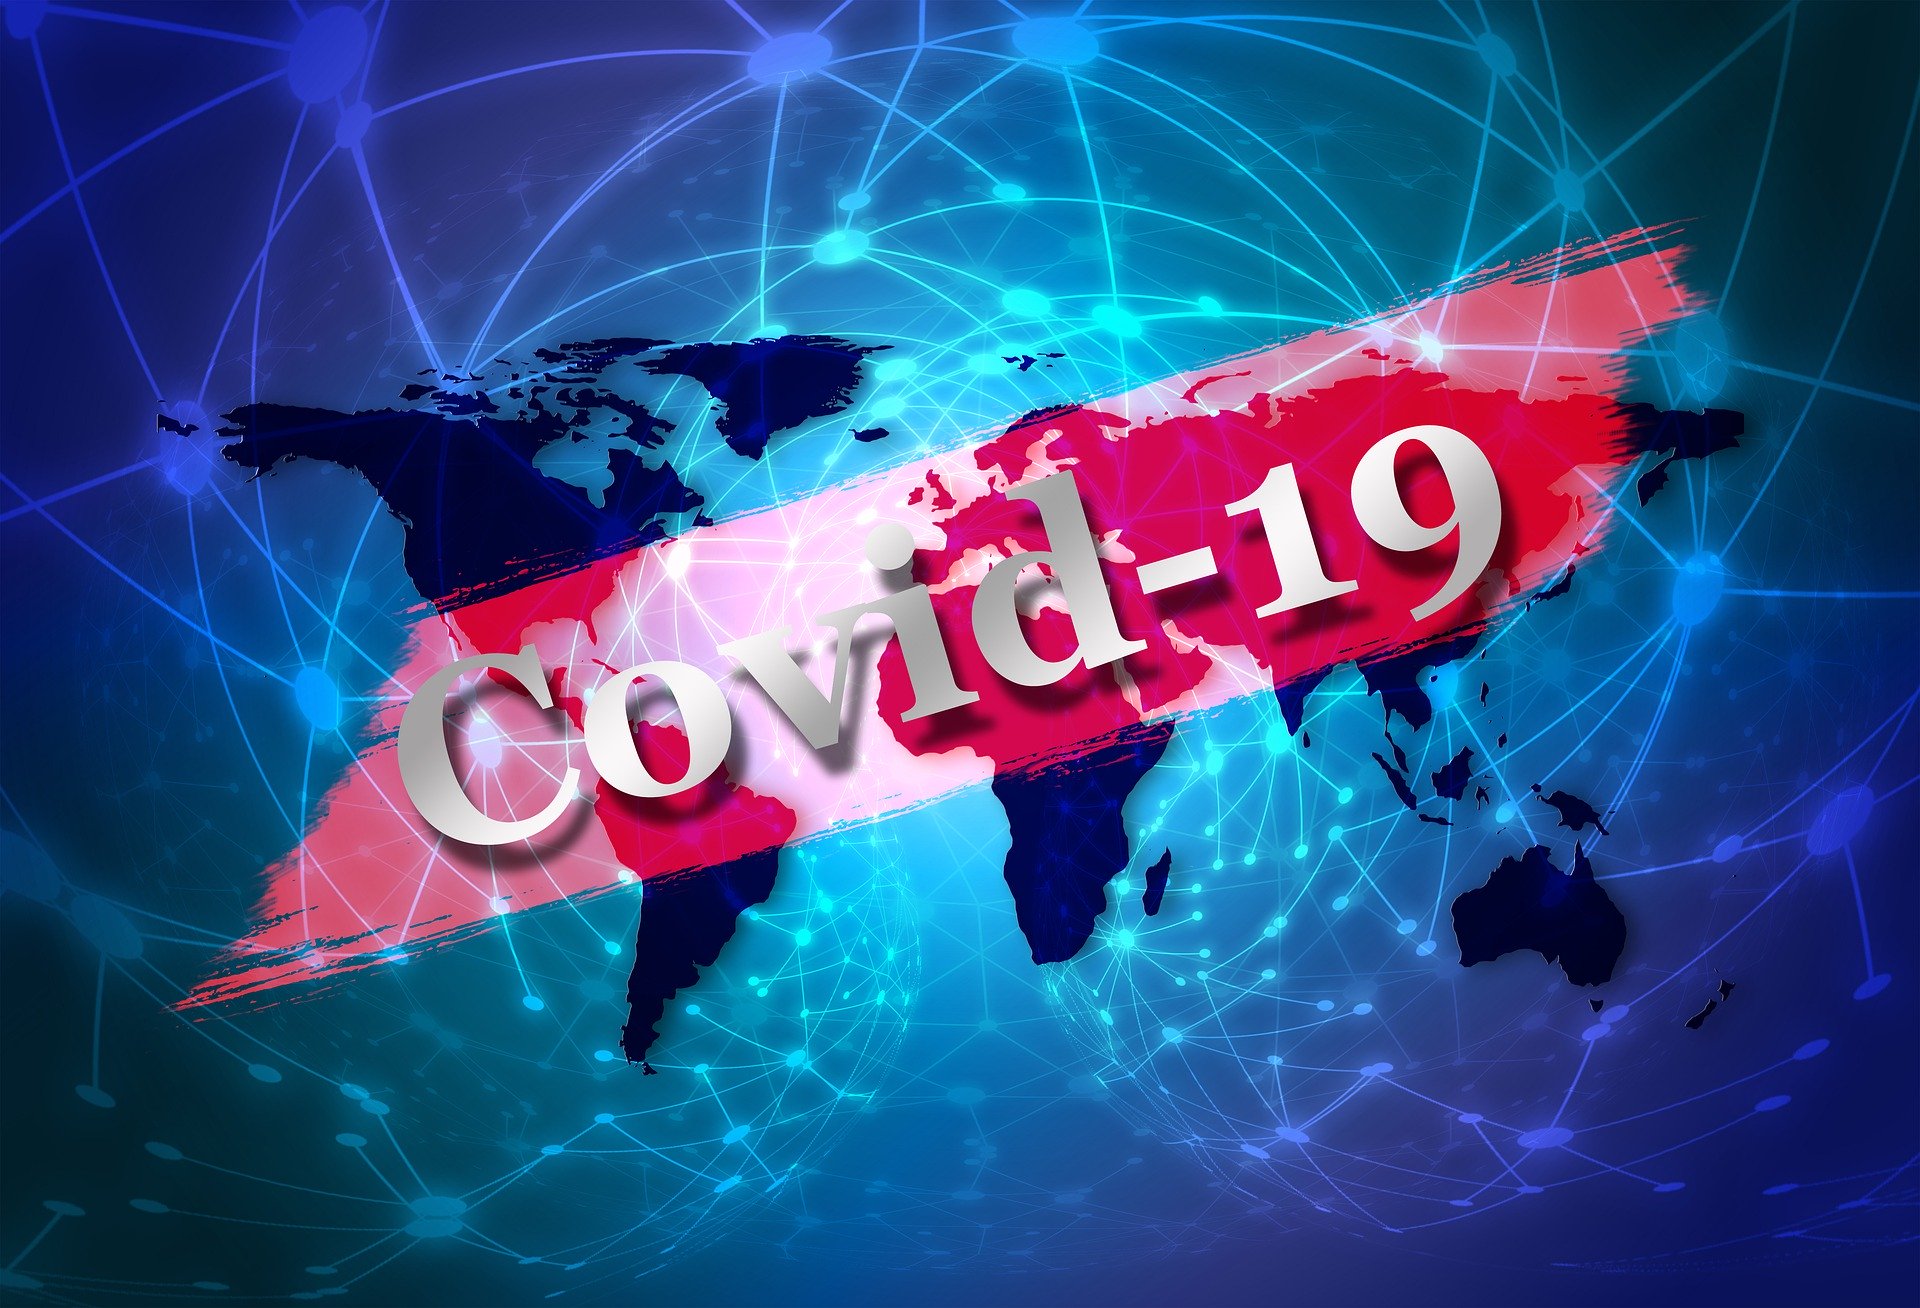 532 са новите случаи на коронавирус в България през изминалото